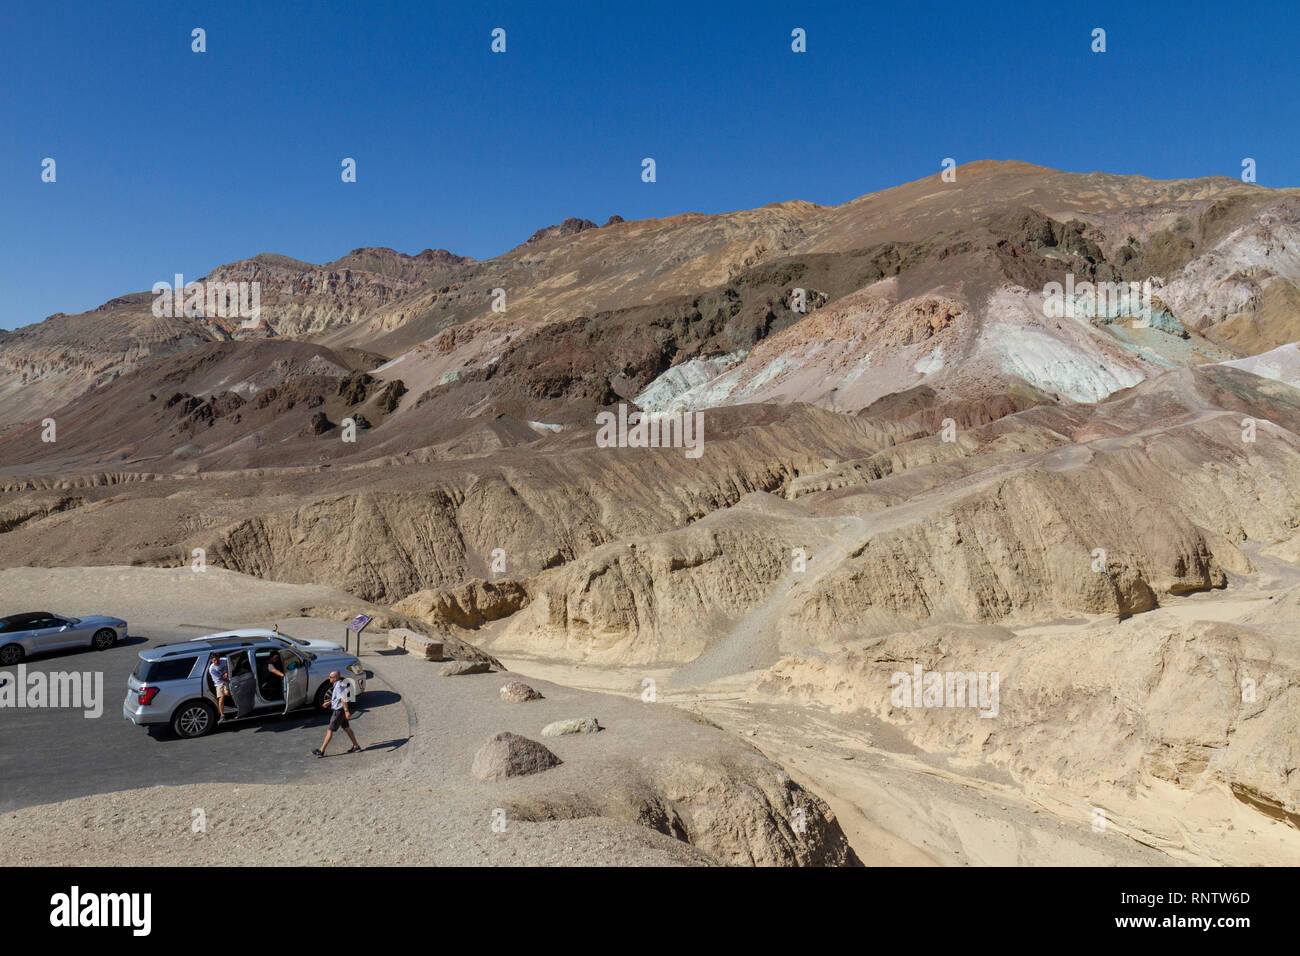 La palette de l'artiste avec parking point de vue, la Death Valley National Park, California, United States. Banque D'Images